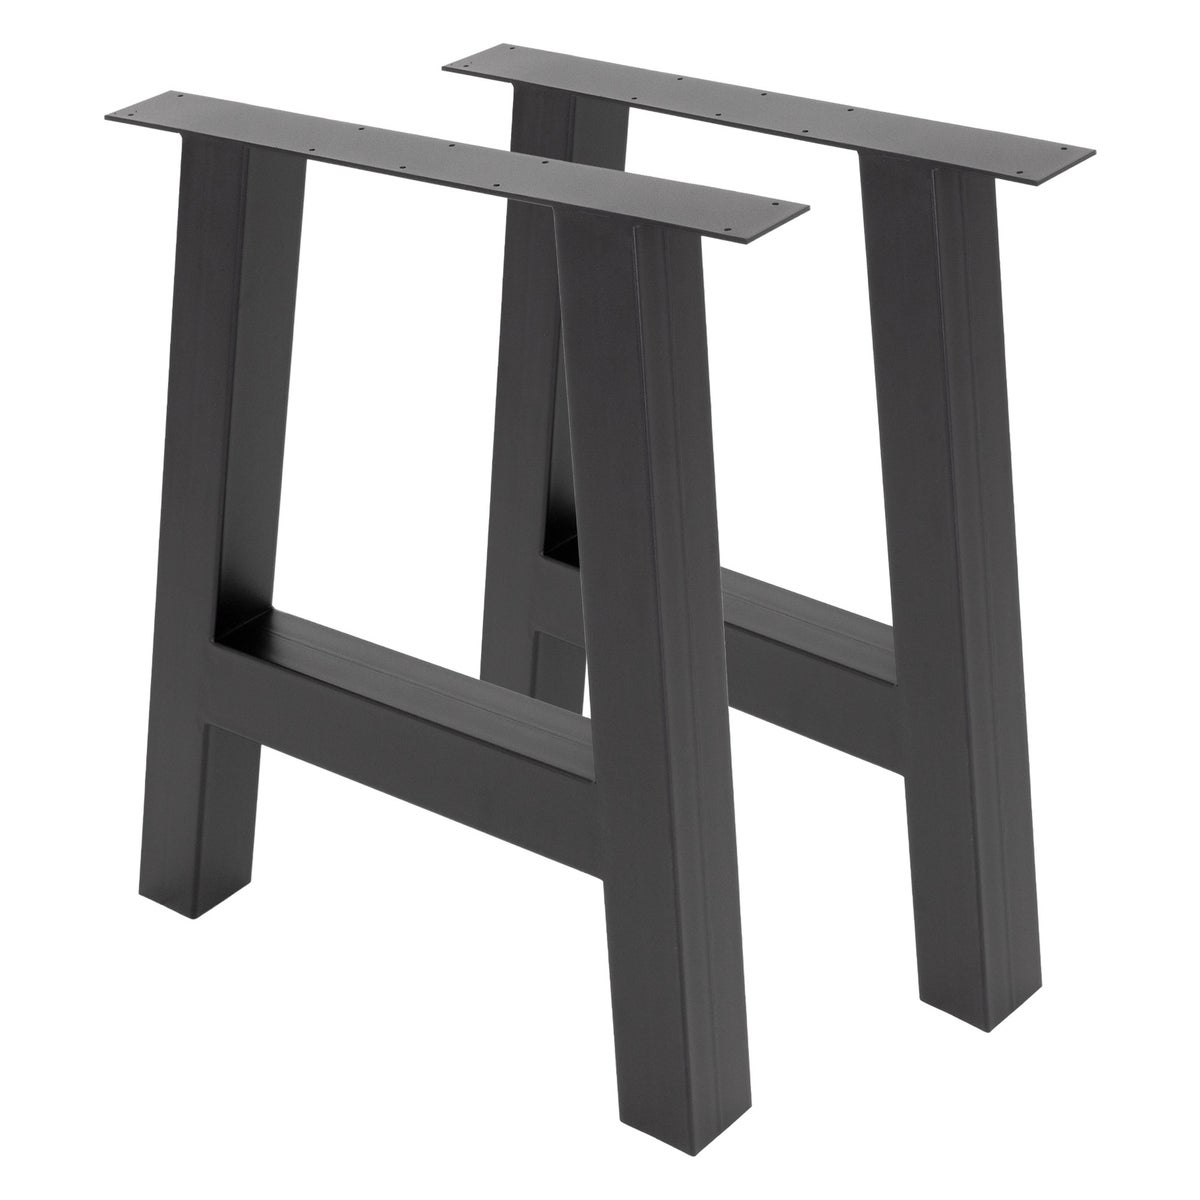 ML-Design 2er Set Tischbeine A-Form 70x72cm Anthrazit, Profil 8x8cm, pulverbeschichteter Stahl, Industriedesign, Metall Tischkufen Tischgestell Tischuntergestell Möbelfüße, für Esstisch Schreibtisch